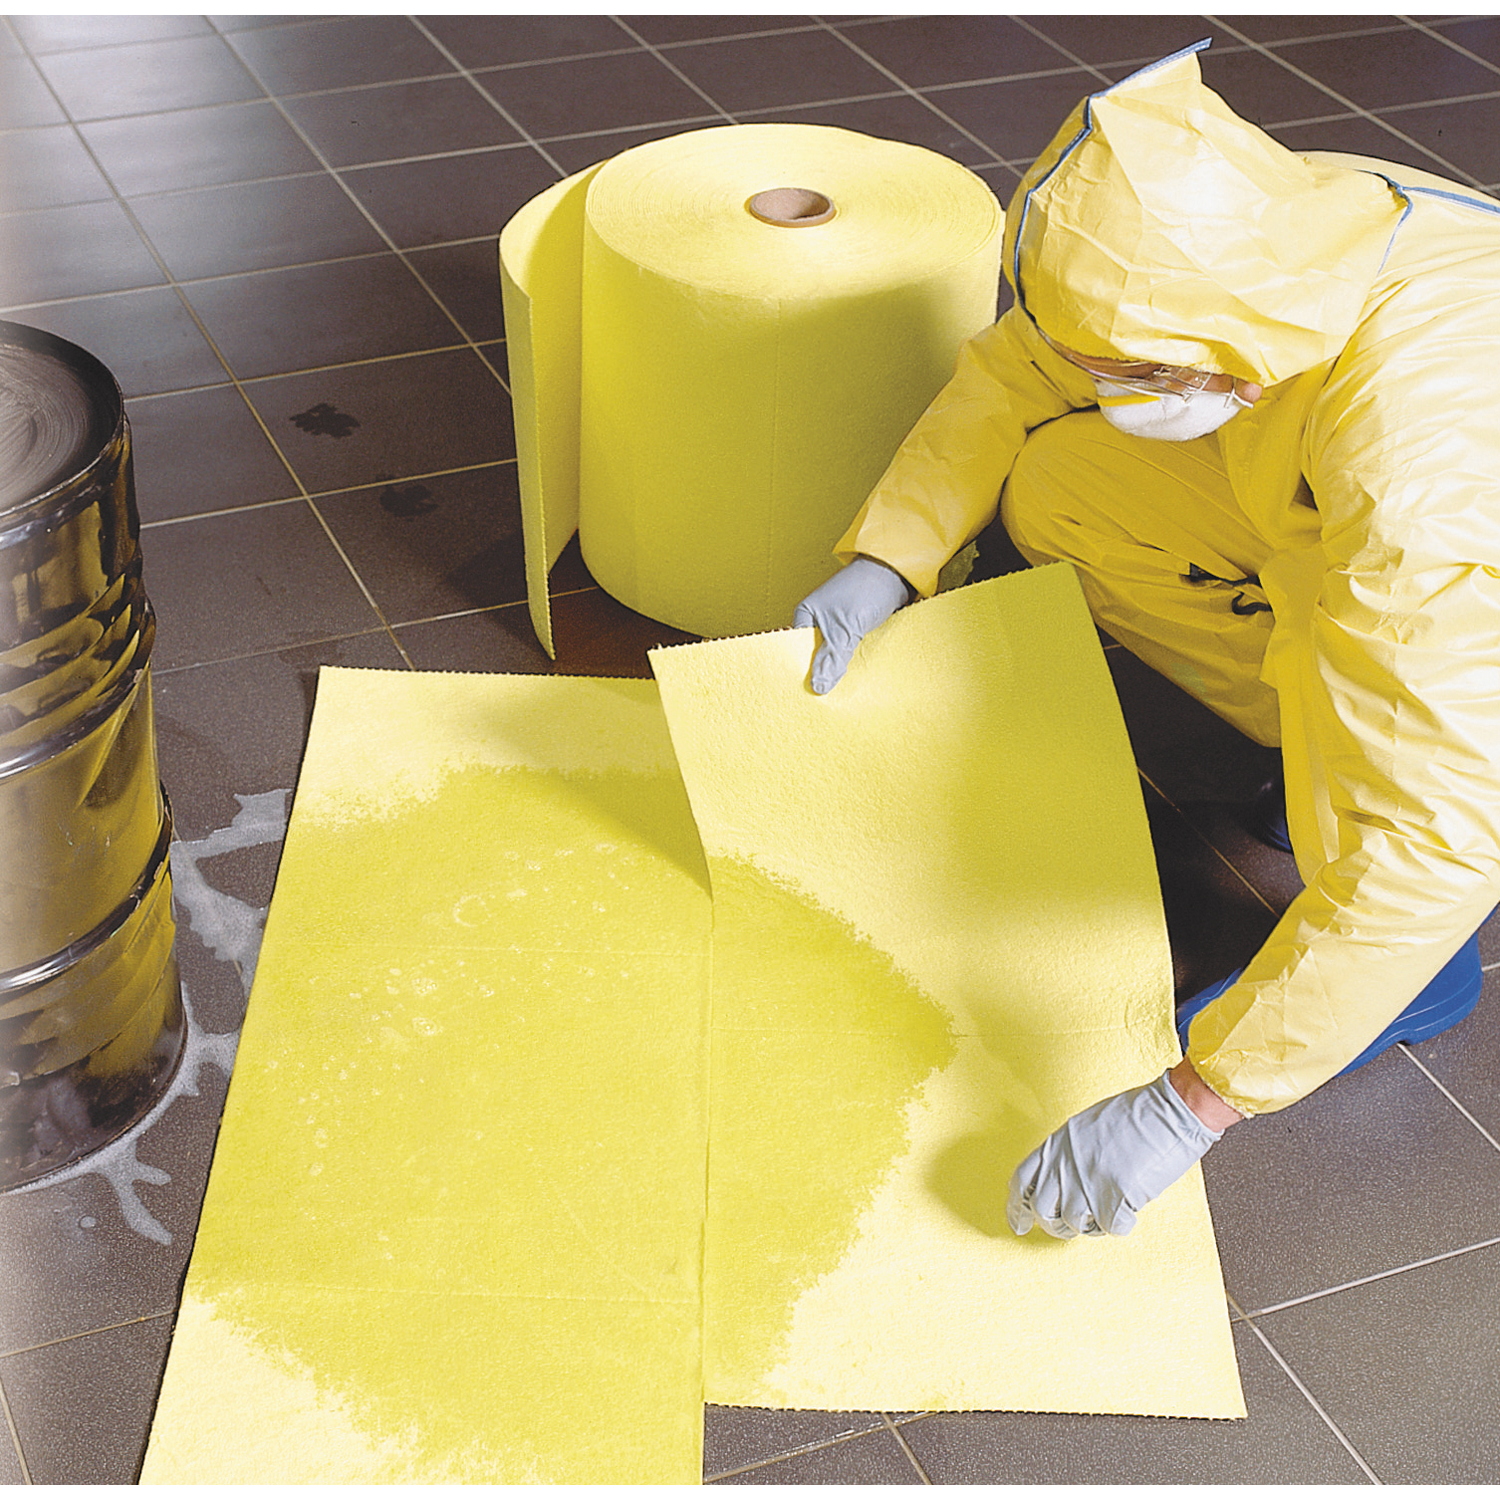 Rouleau de tapis absorbant en polypropylène pour produits chimiques